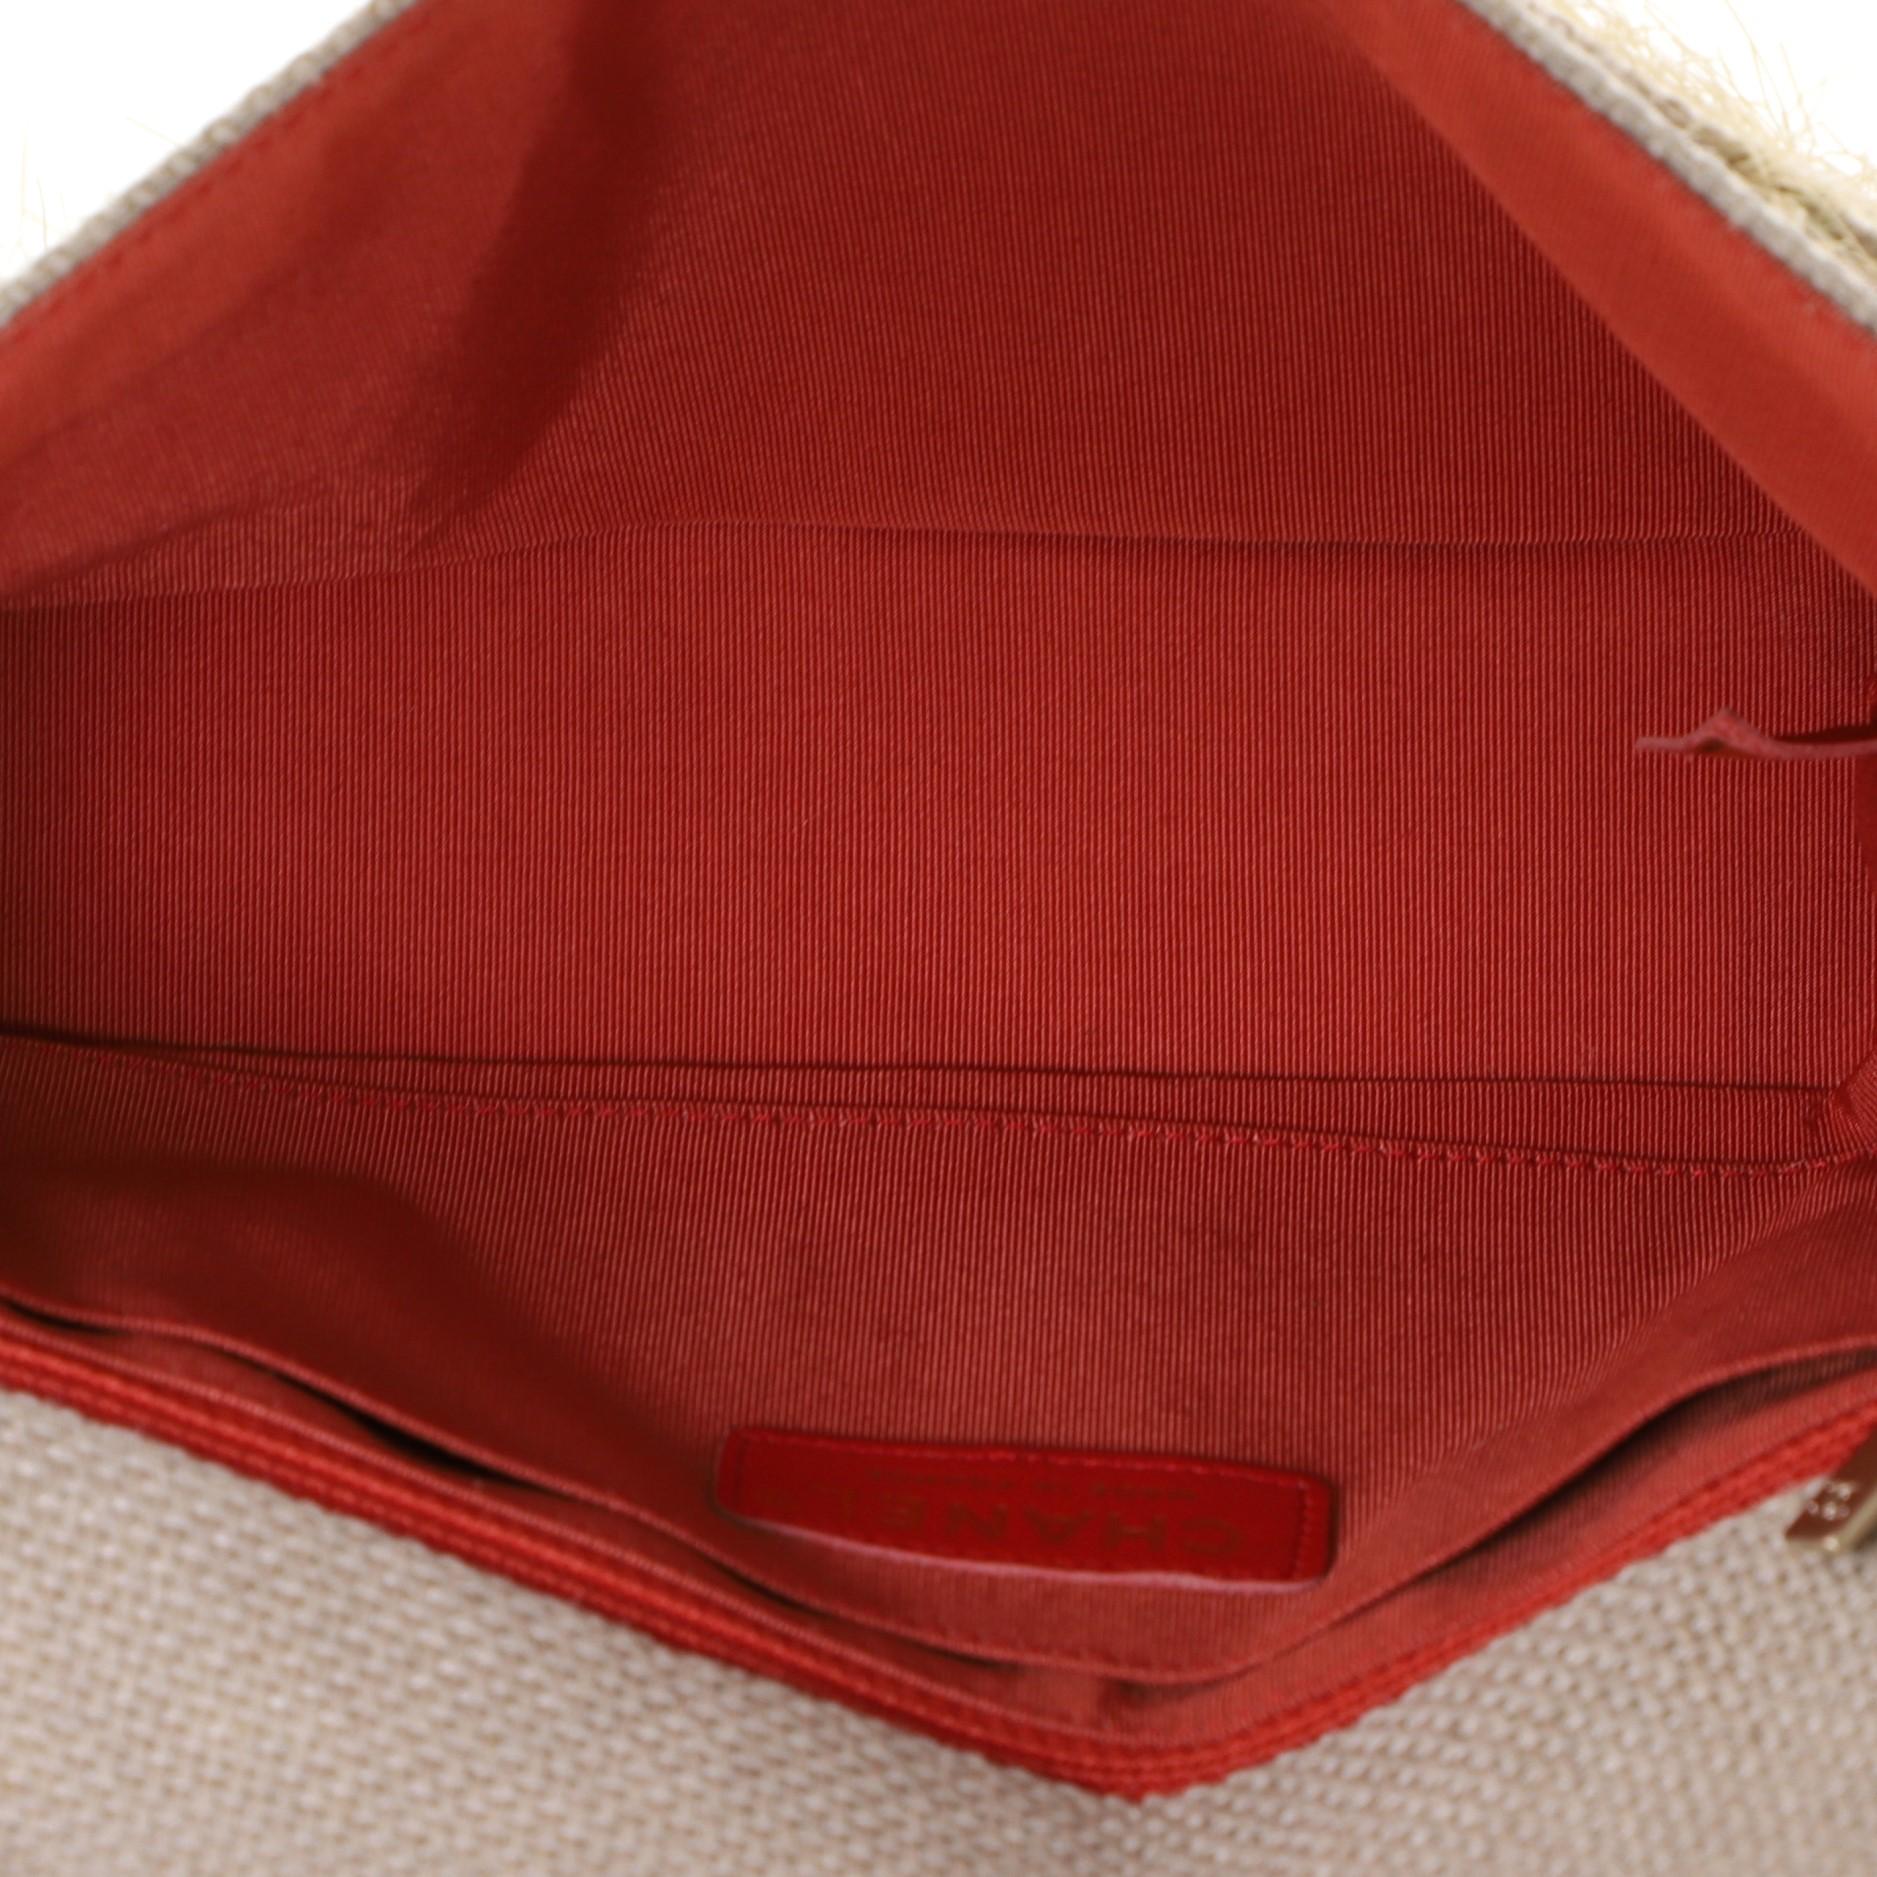 Chanel Camellia Classic Single Flap Bag Quilted Burlap Medium 2